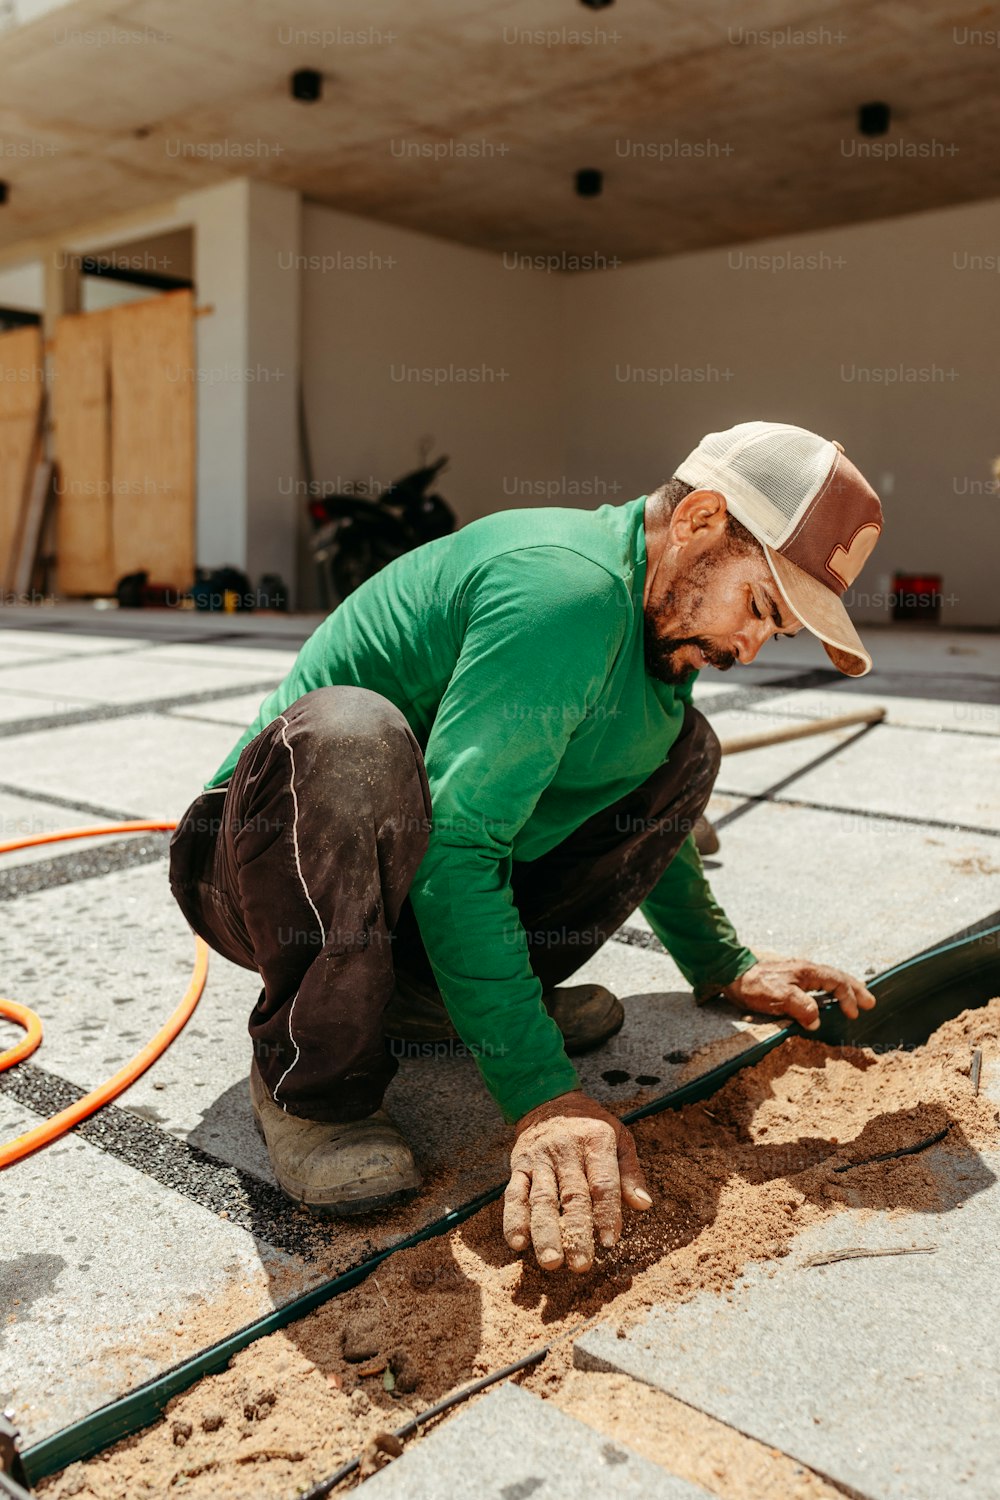 Un hombre trabajando en un piso con una manguera